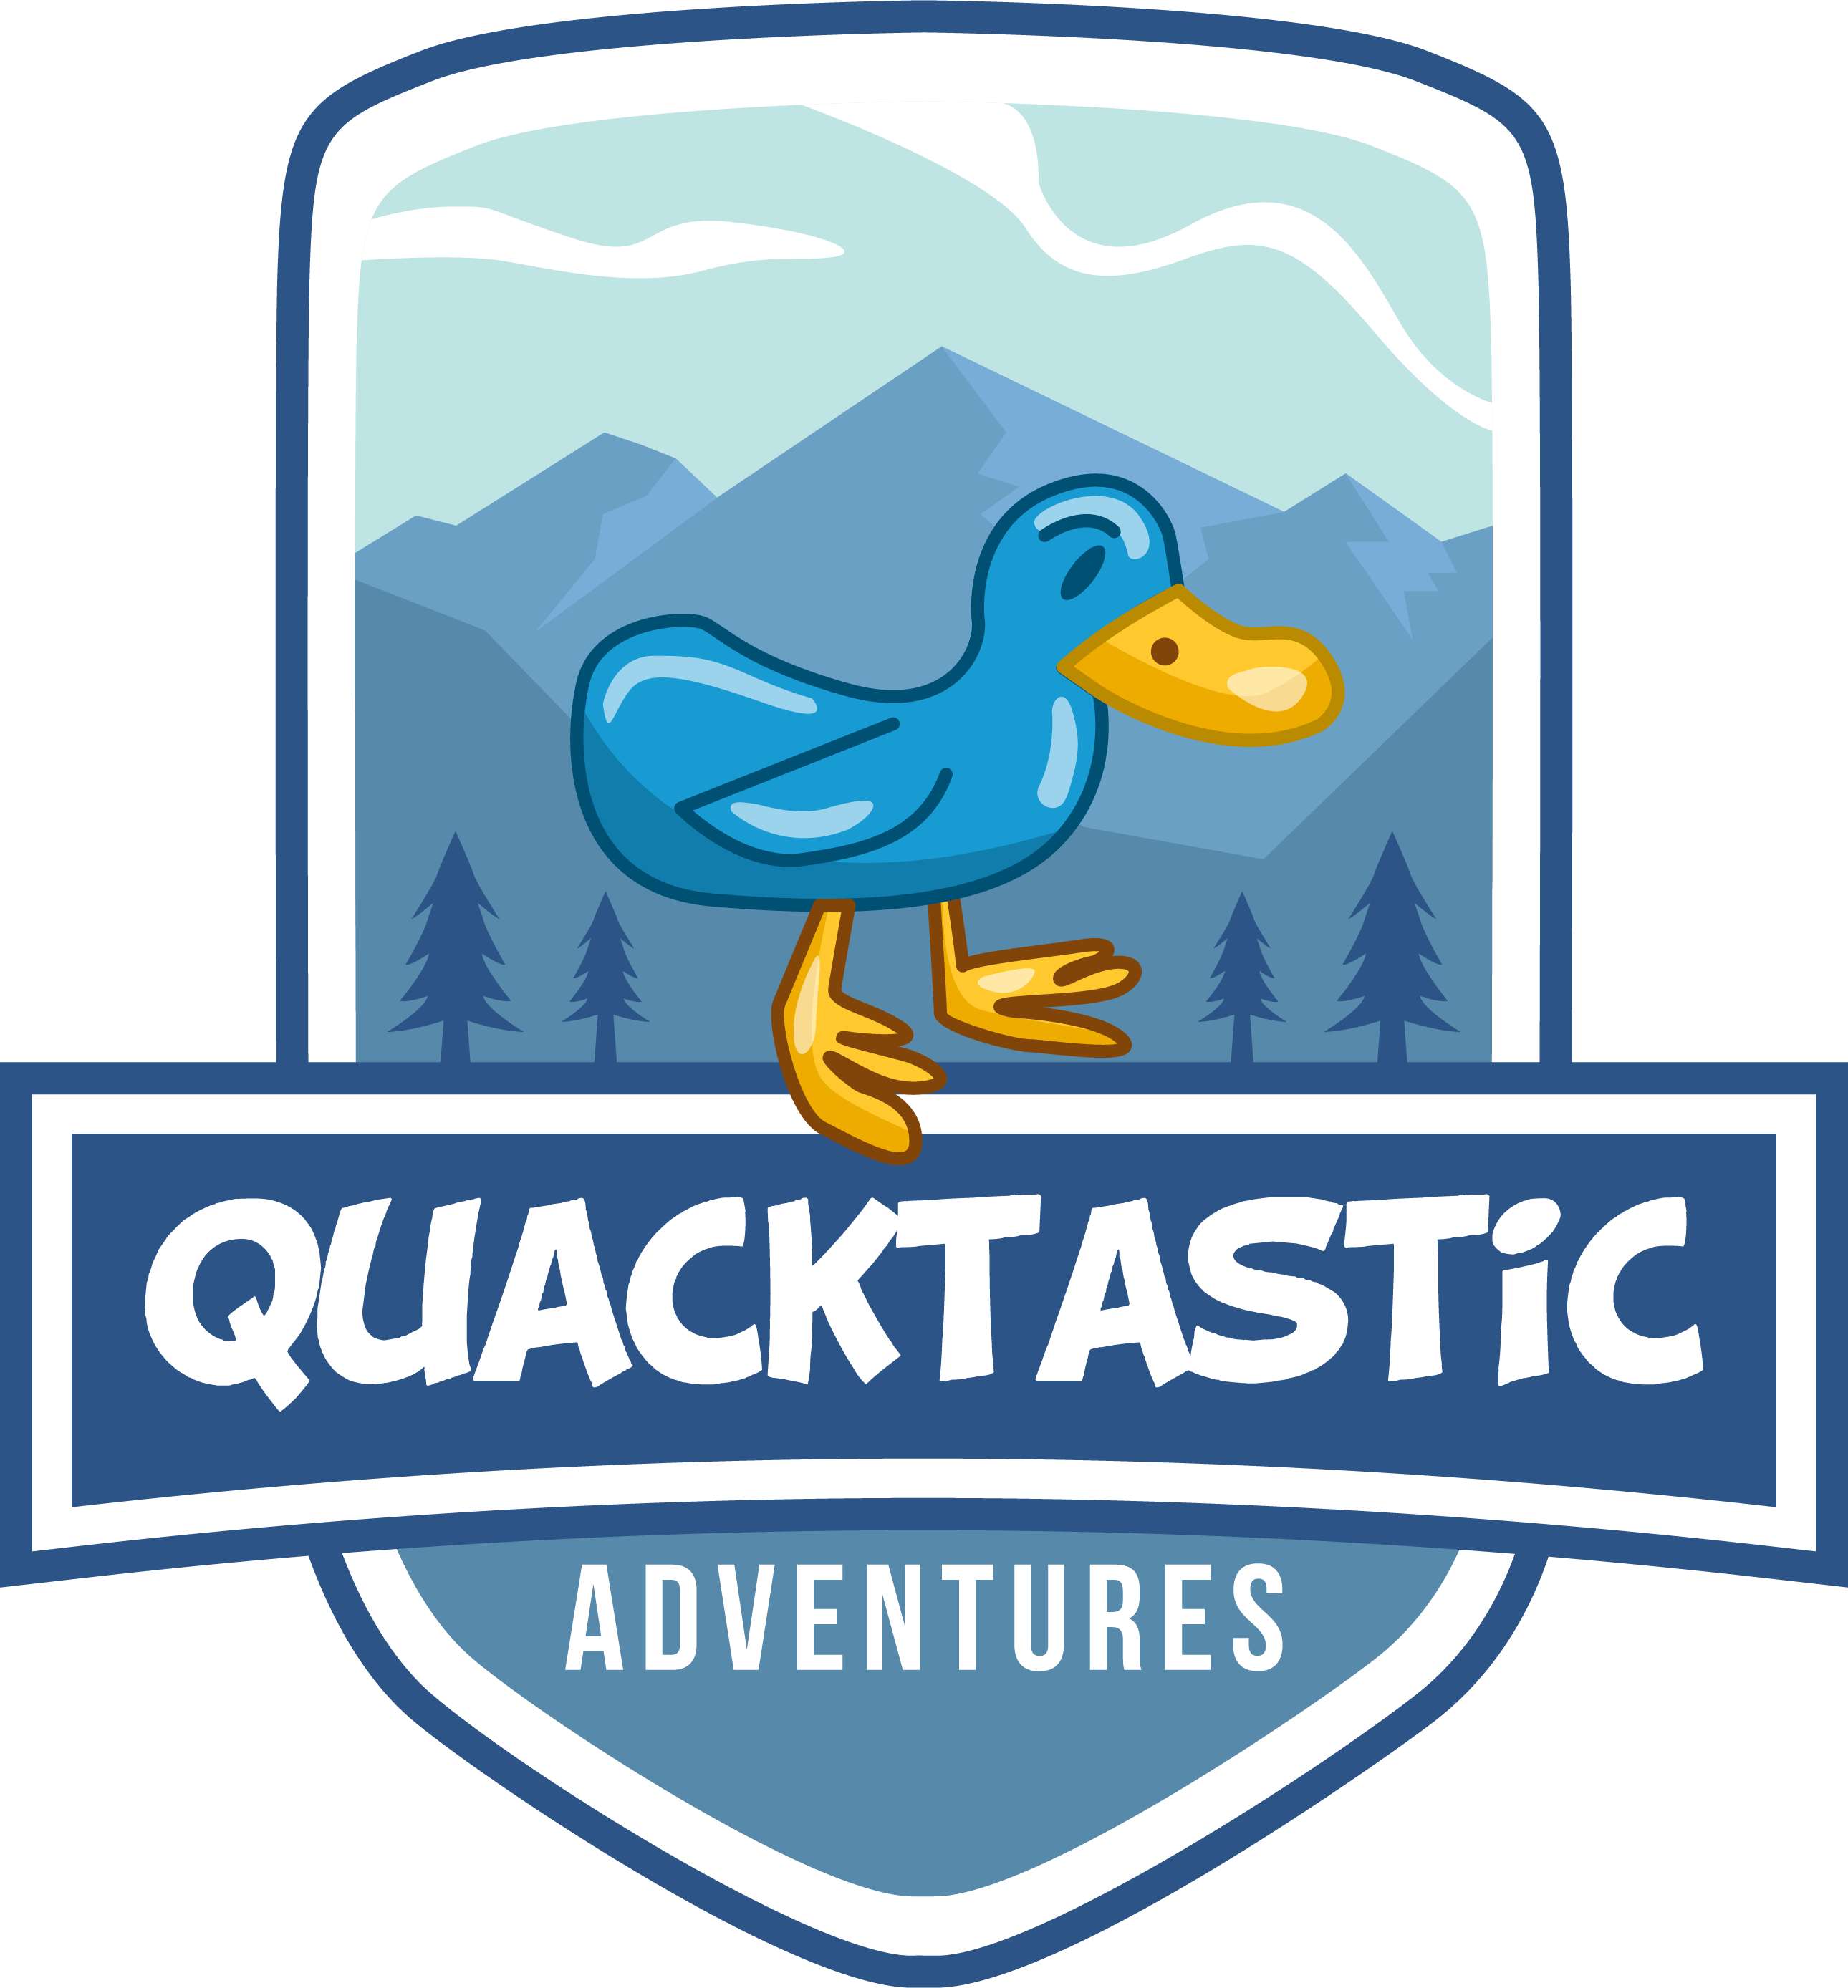 Quacktastic Adventures